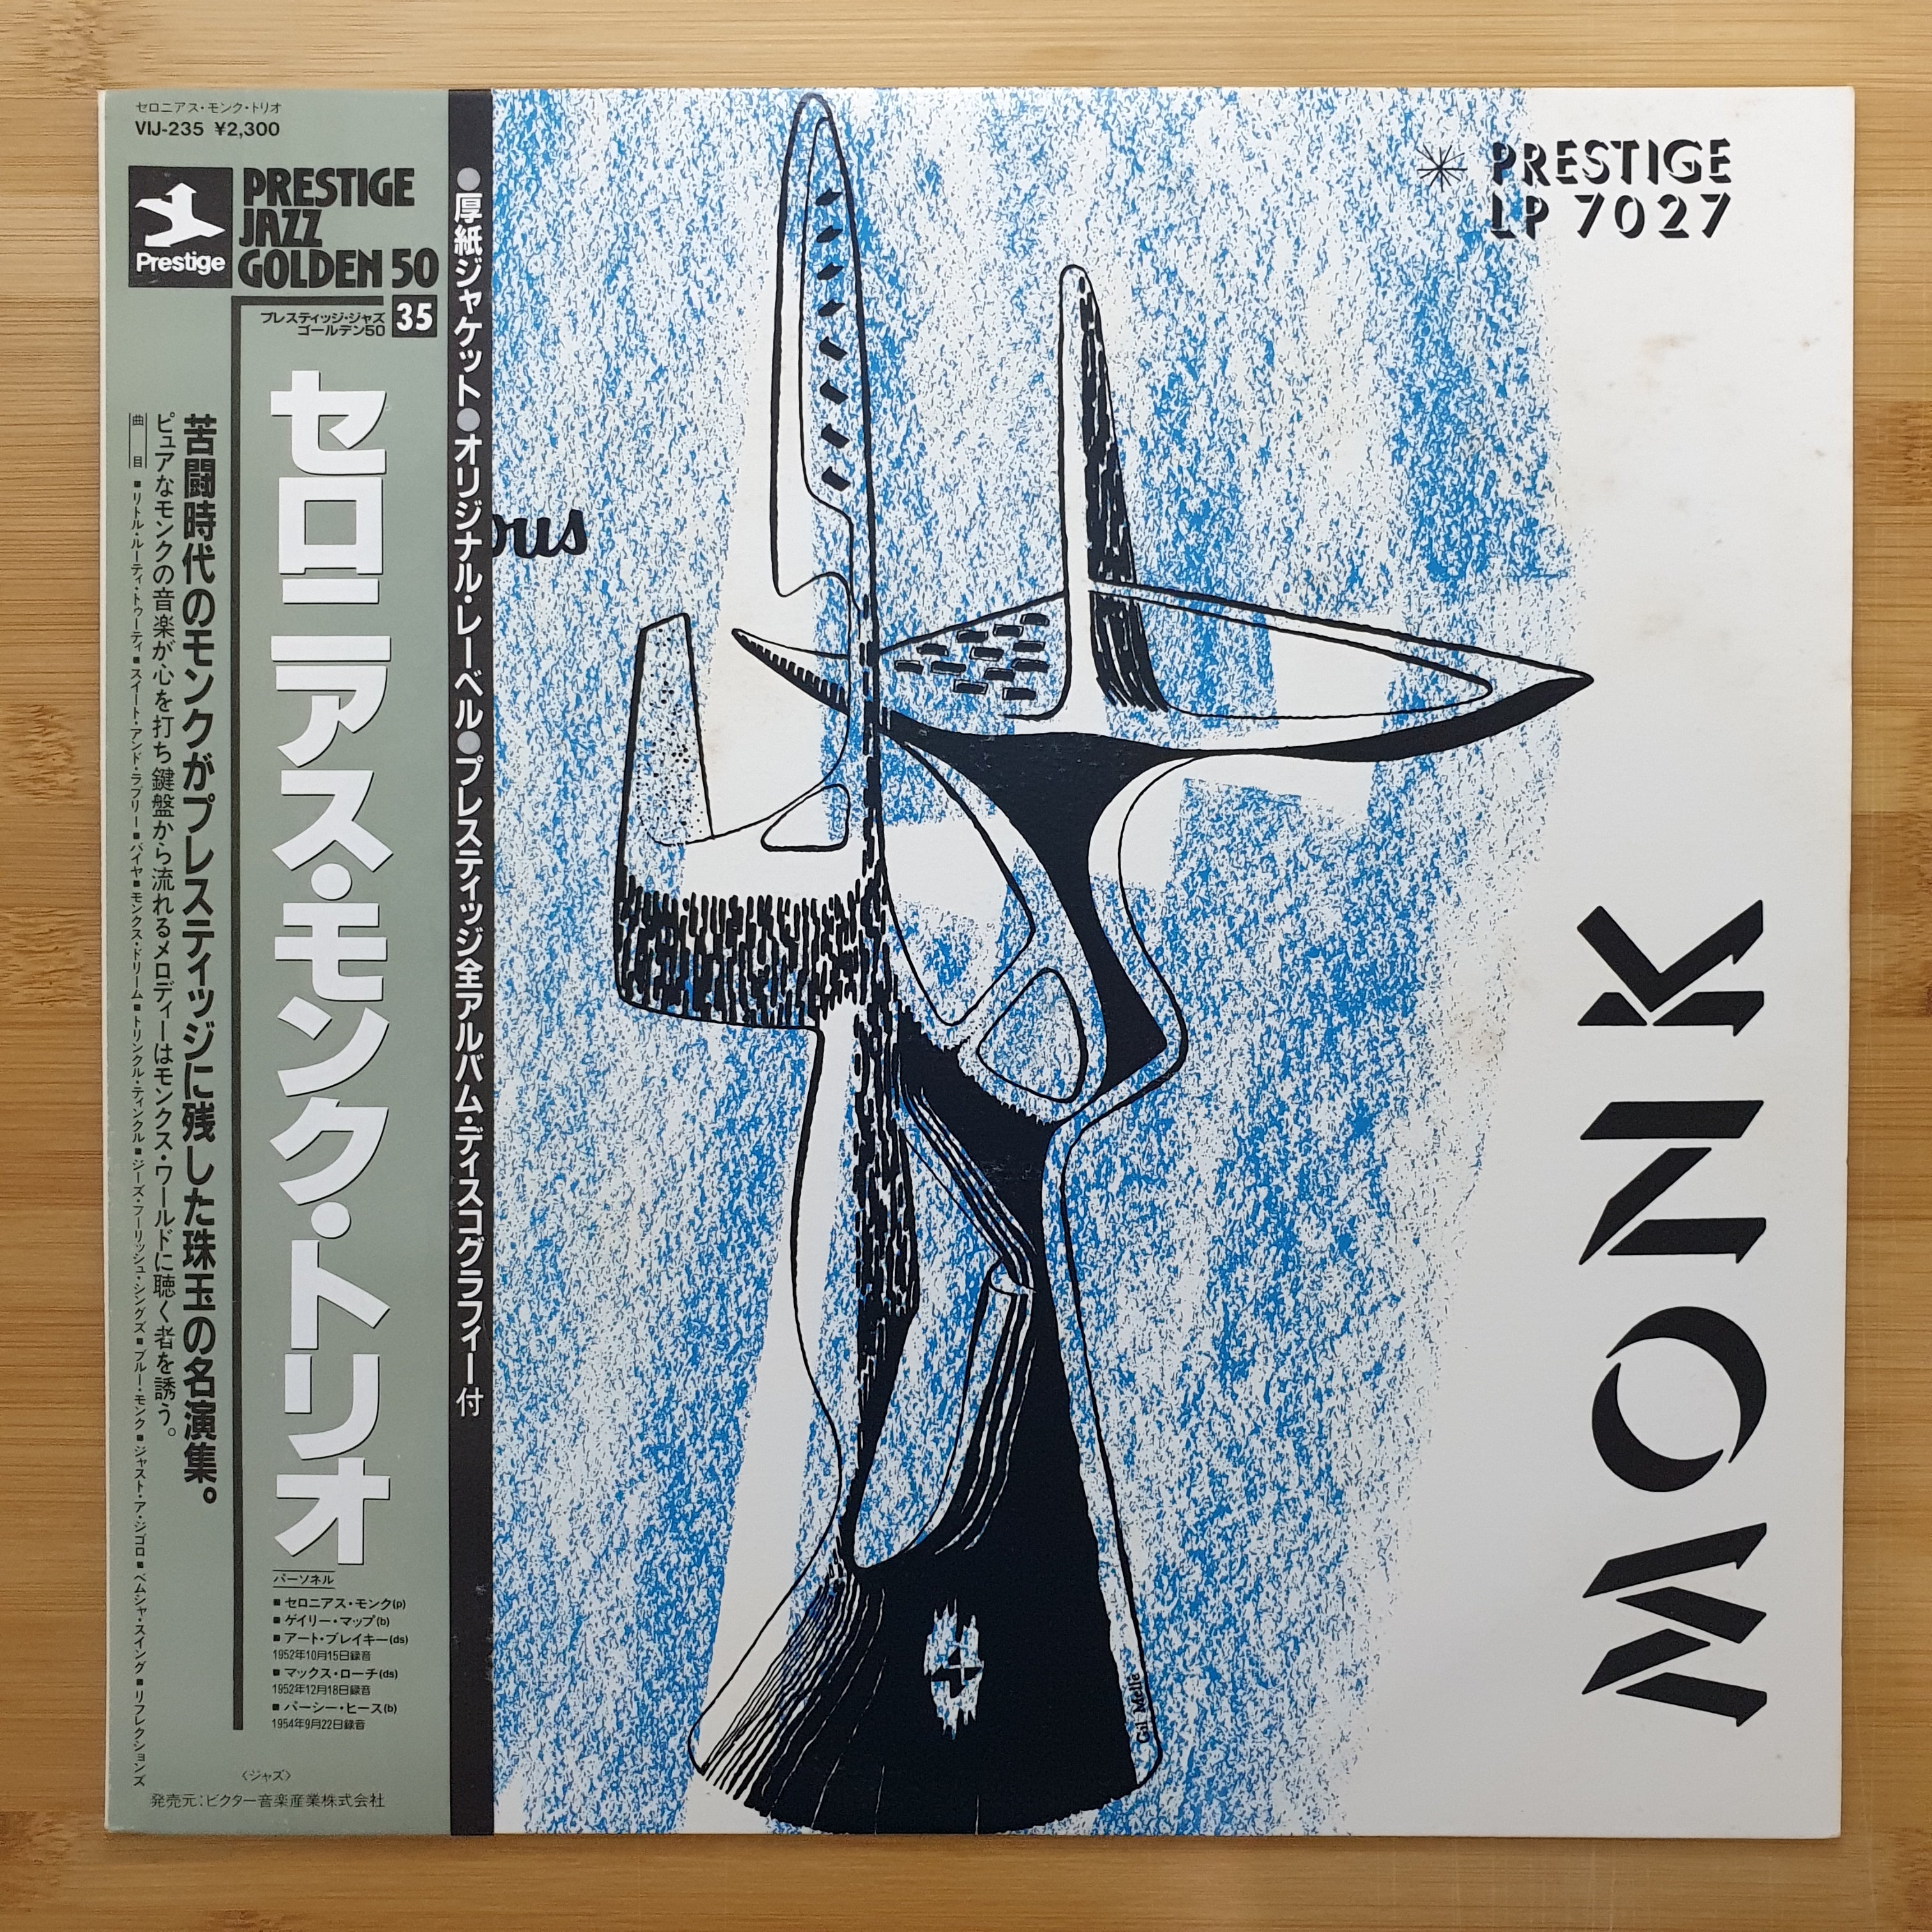 ジャズ] Thelonious Monk Trio Thelonious - 洋楽